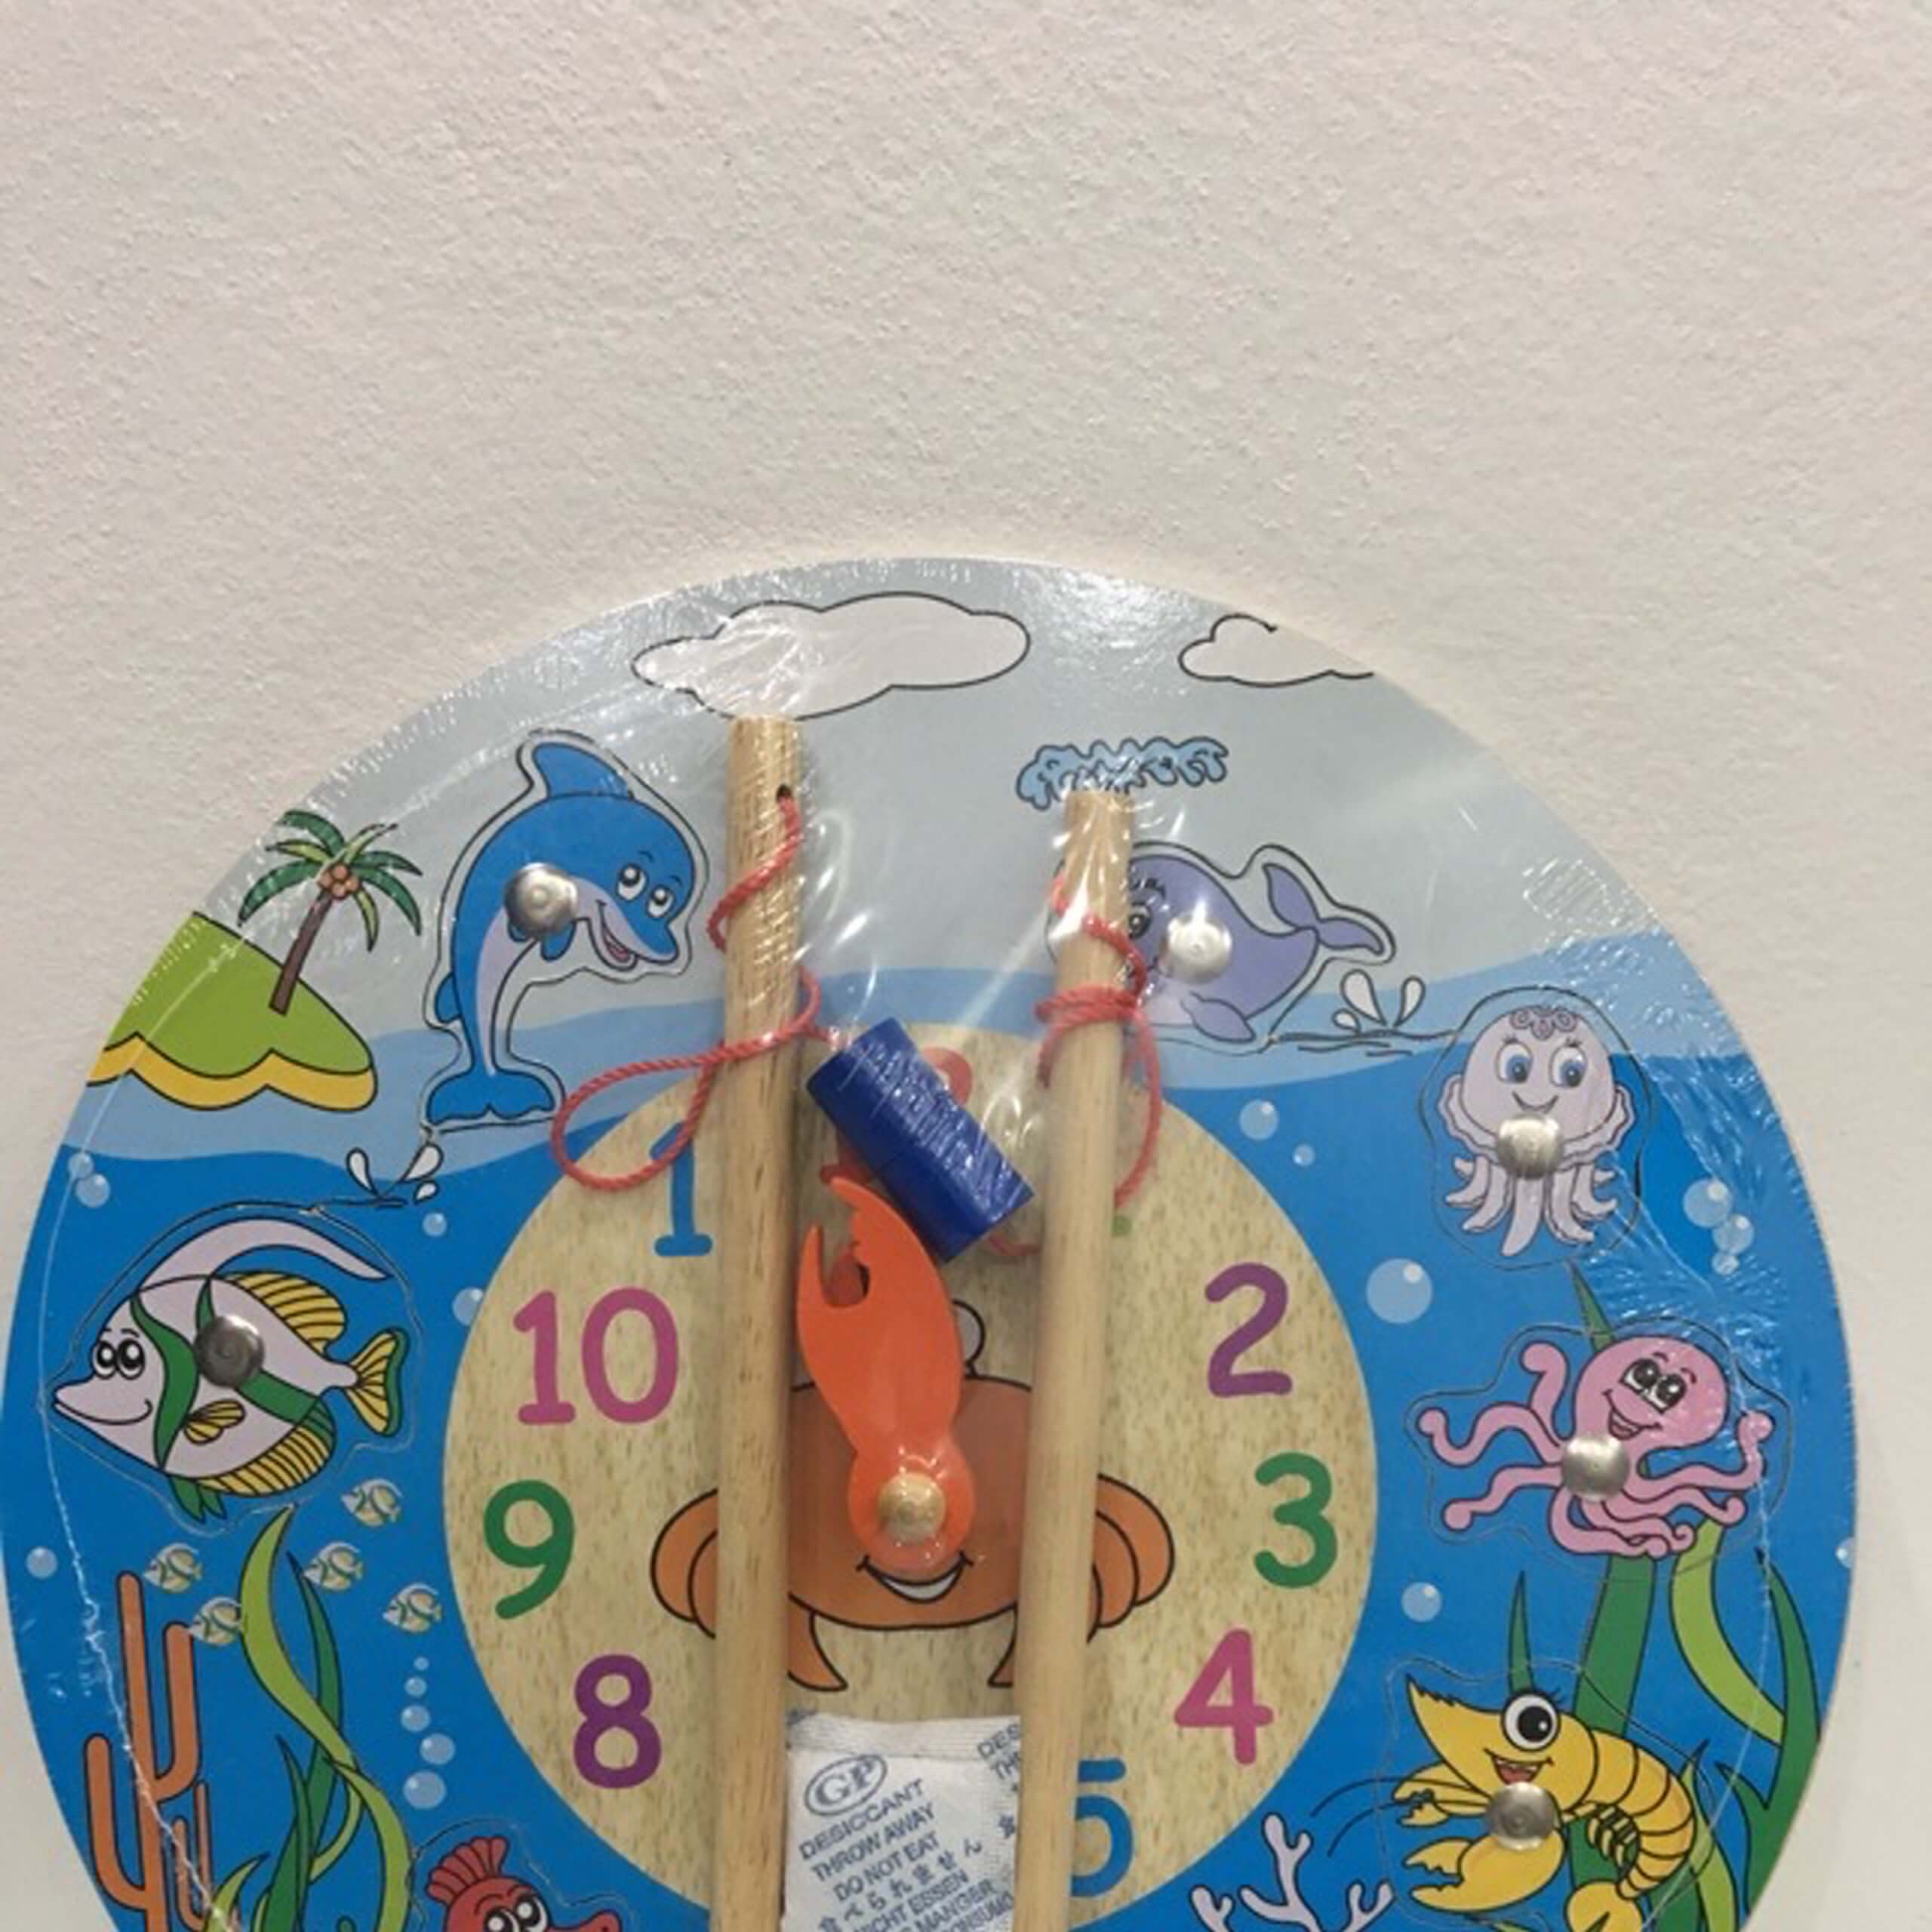 Đồng hồ câu cá đại dương - G63362